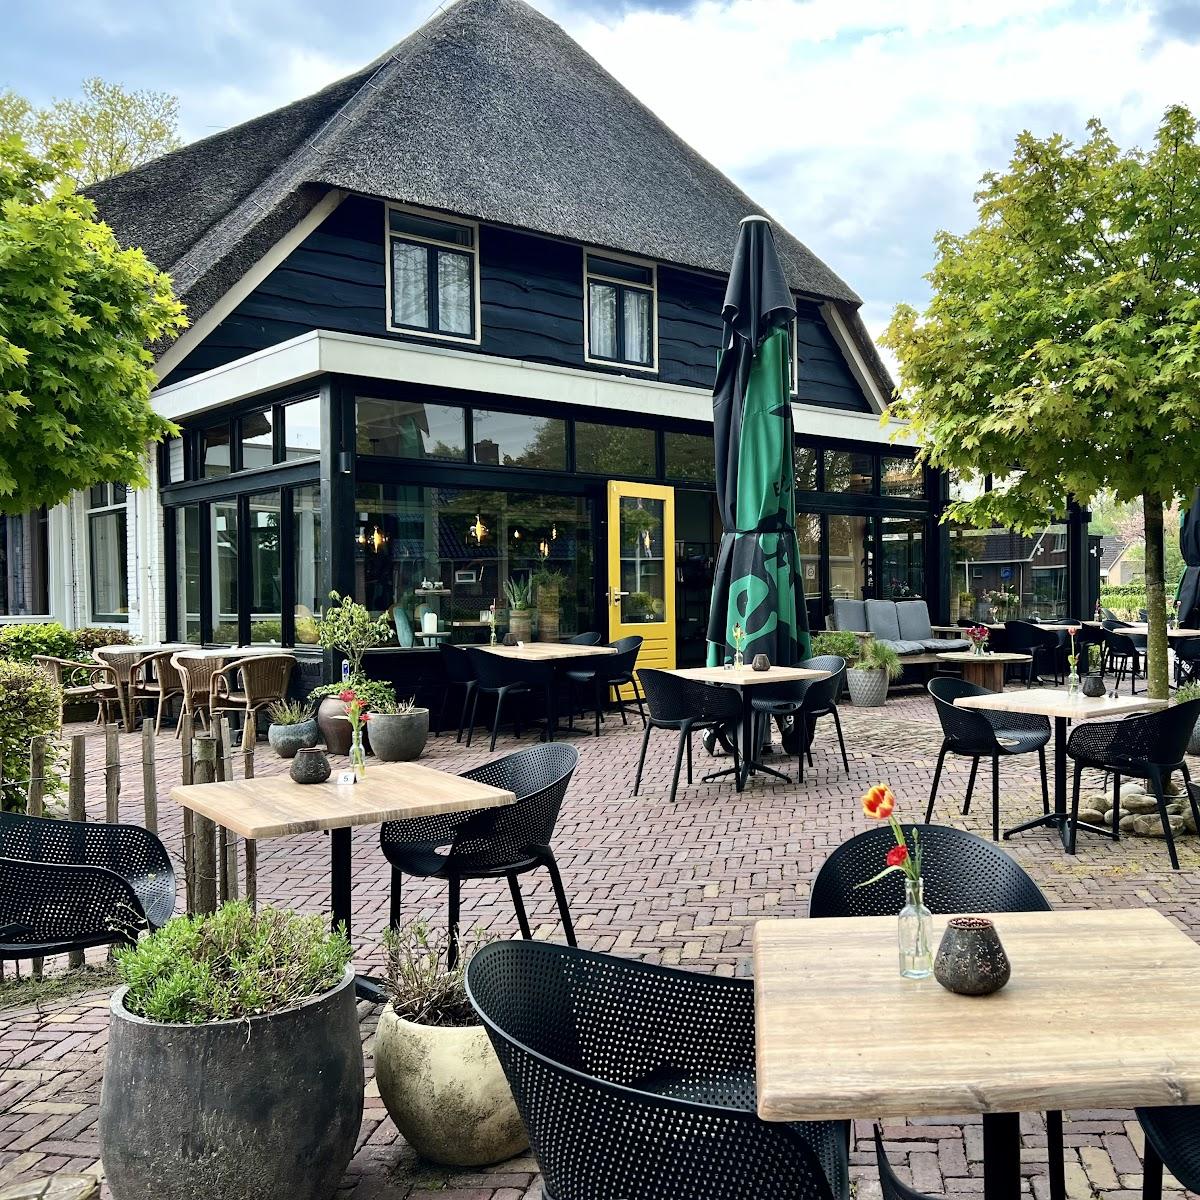 Restaurant "Het Wapen van Aelden" in Aalden